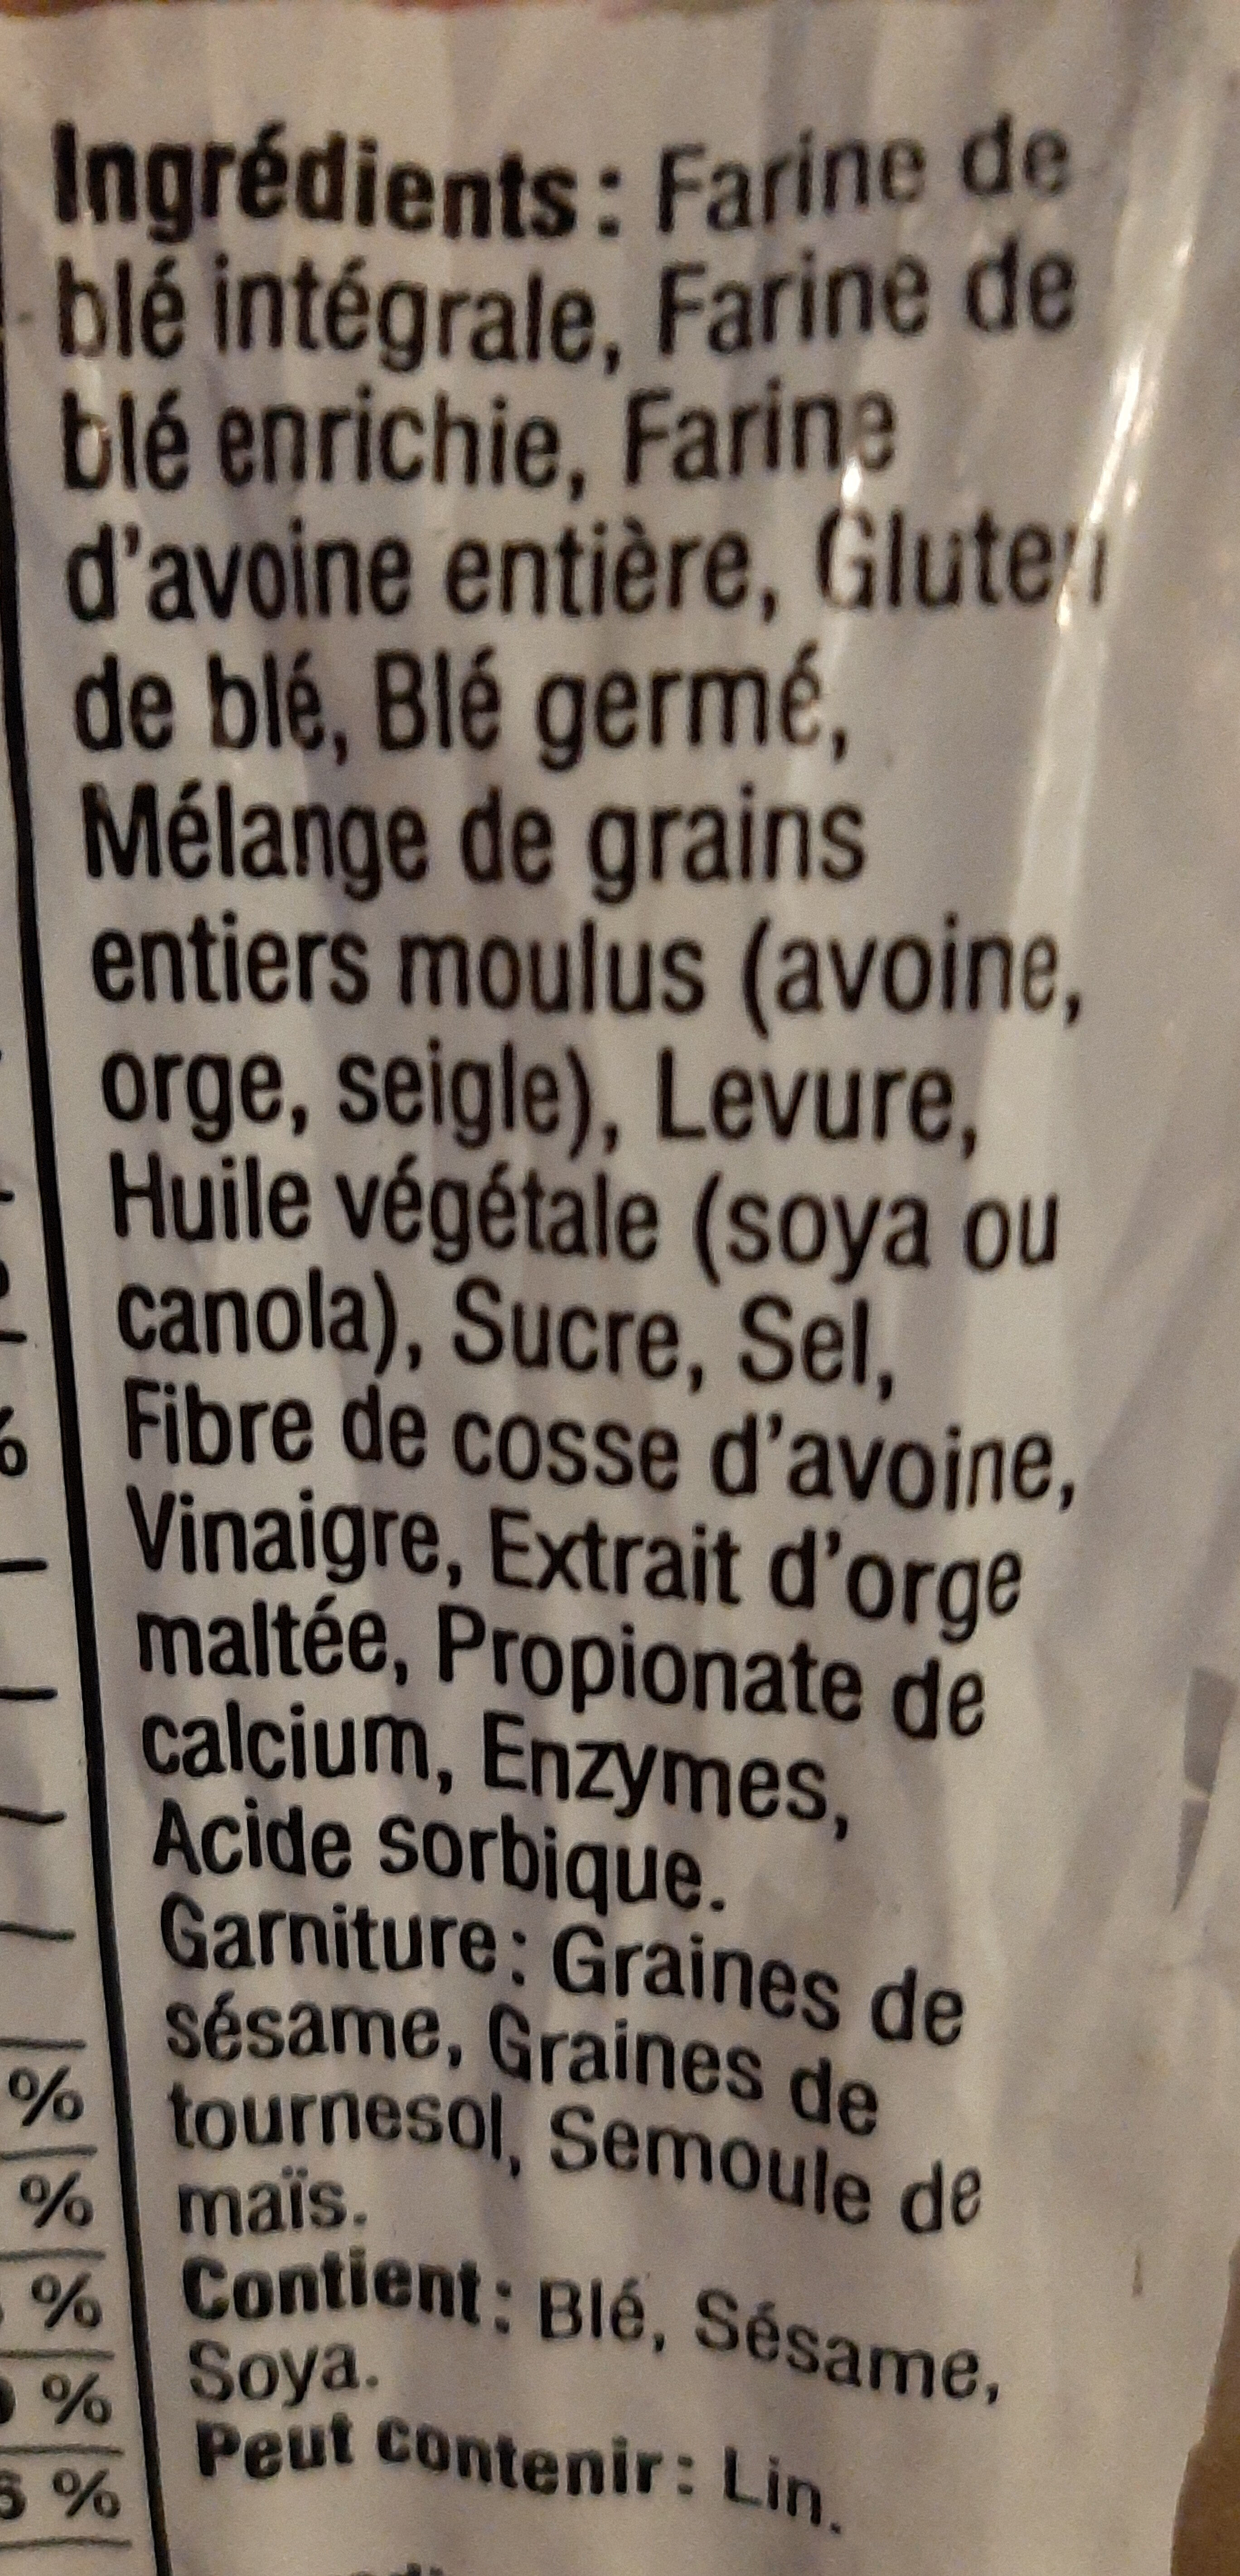 Pain Belge au Blé germé - Ingredients - fr